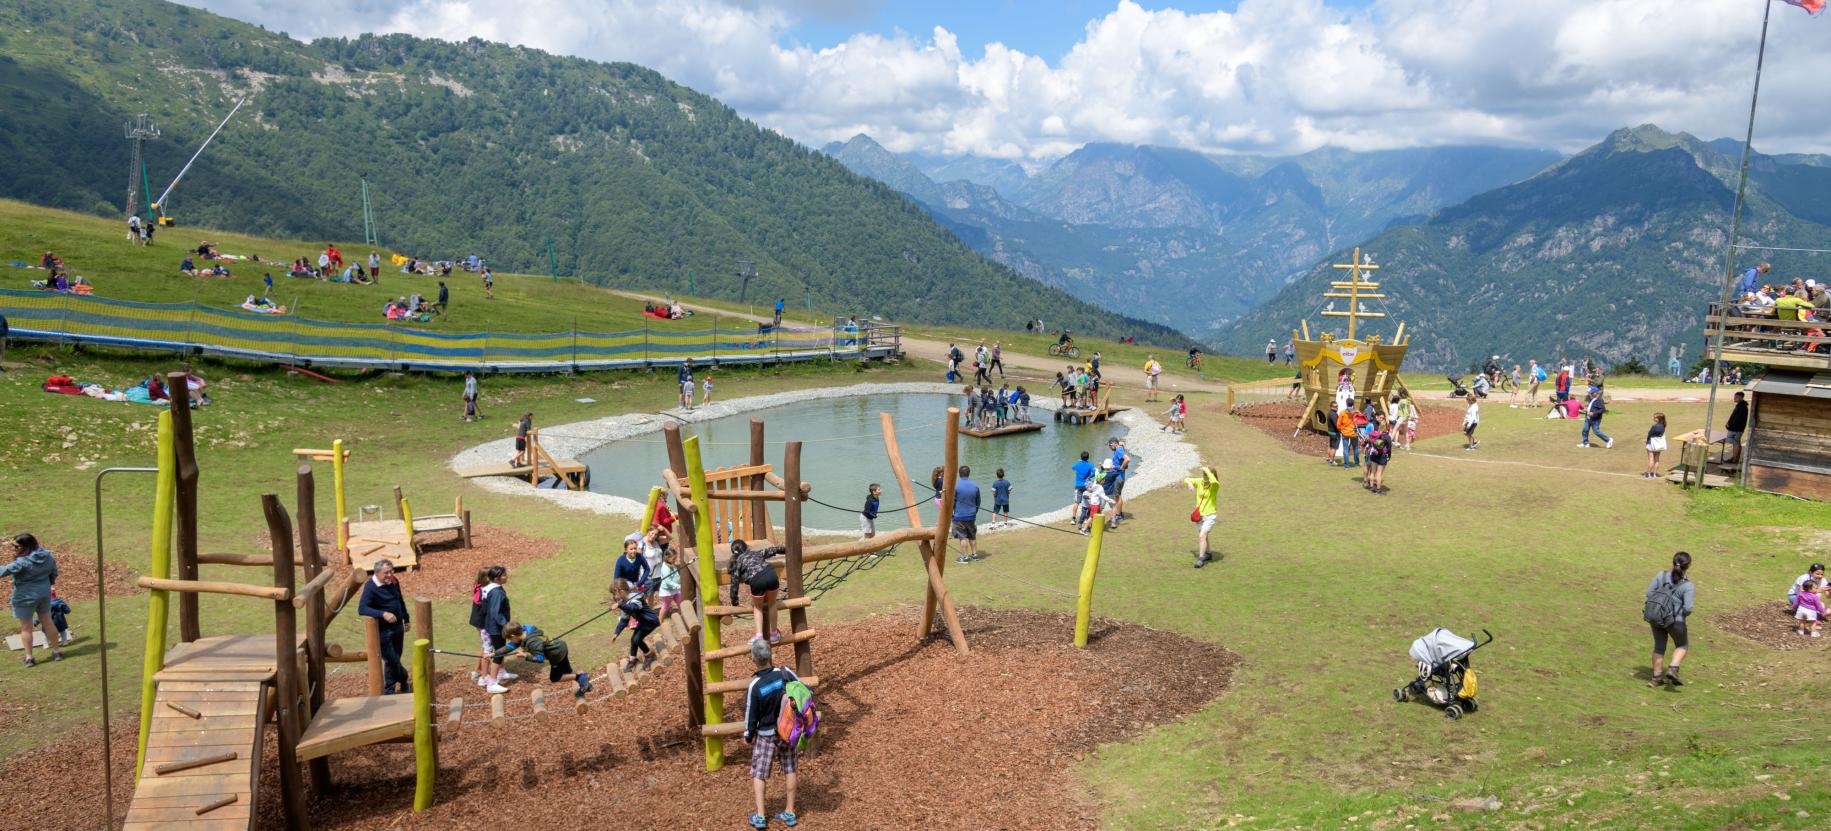 Parco giochi il Covo di Meraviglio, Alpe di Mera